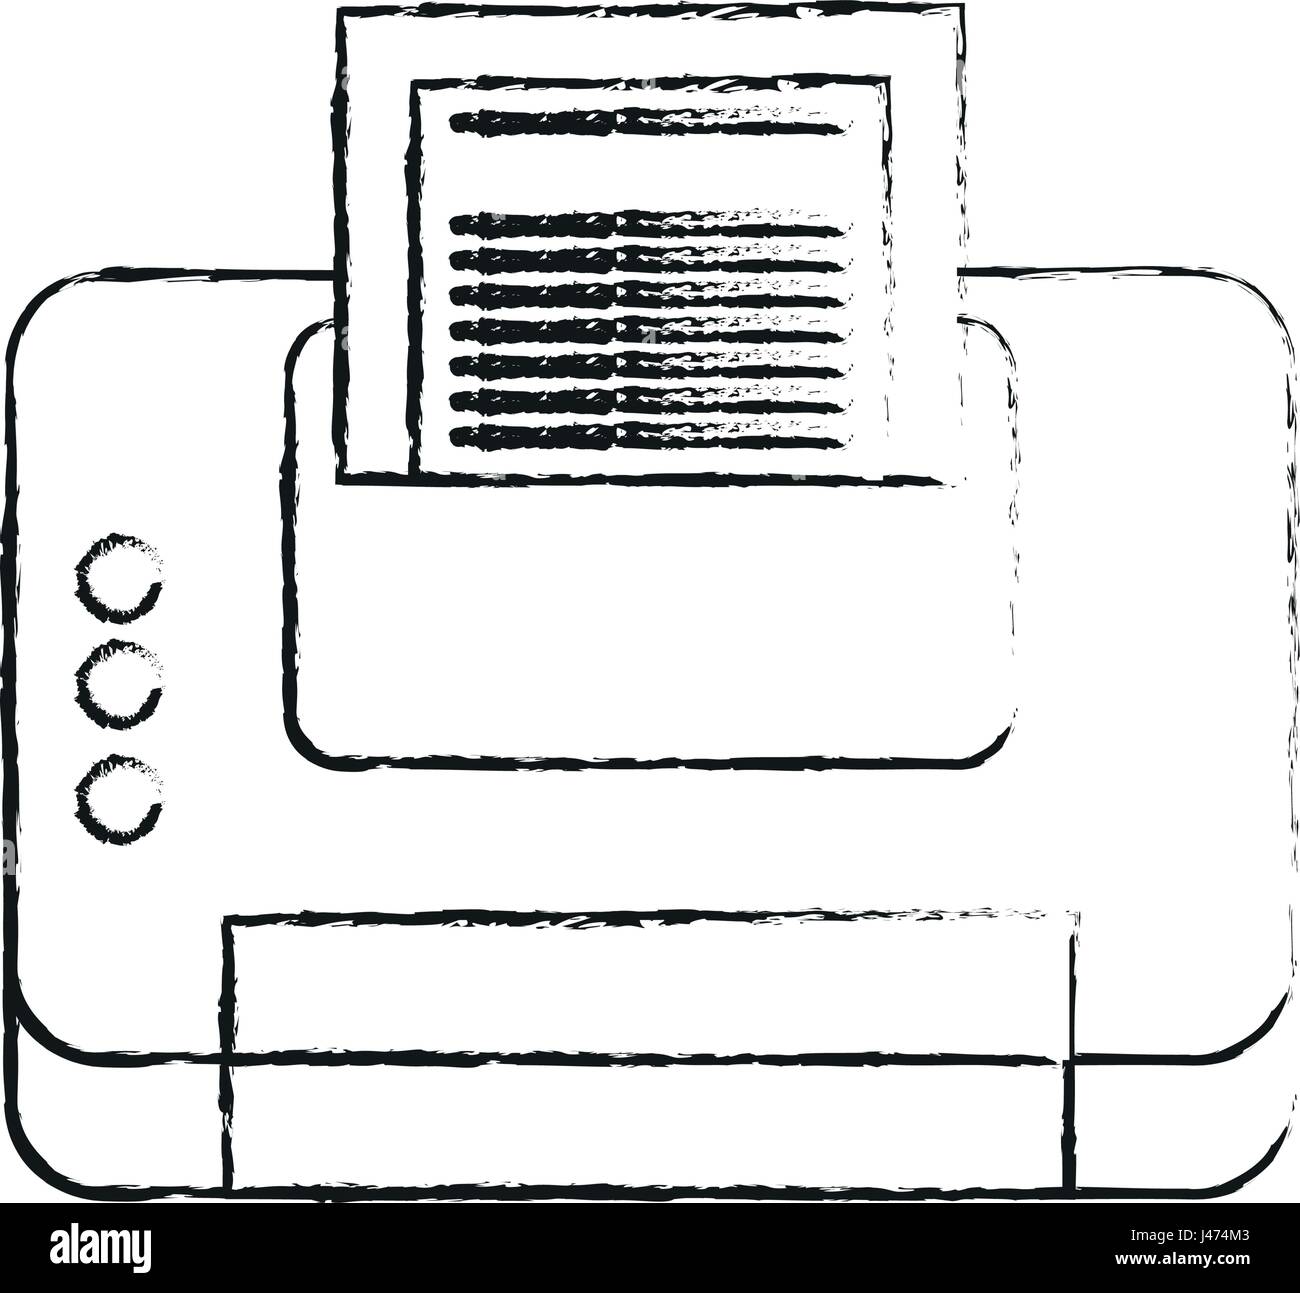 Cartoon silueta borrosa dispositivo con hojas de papel de la impresora  Imagen Vector de stock - Alamy